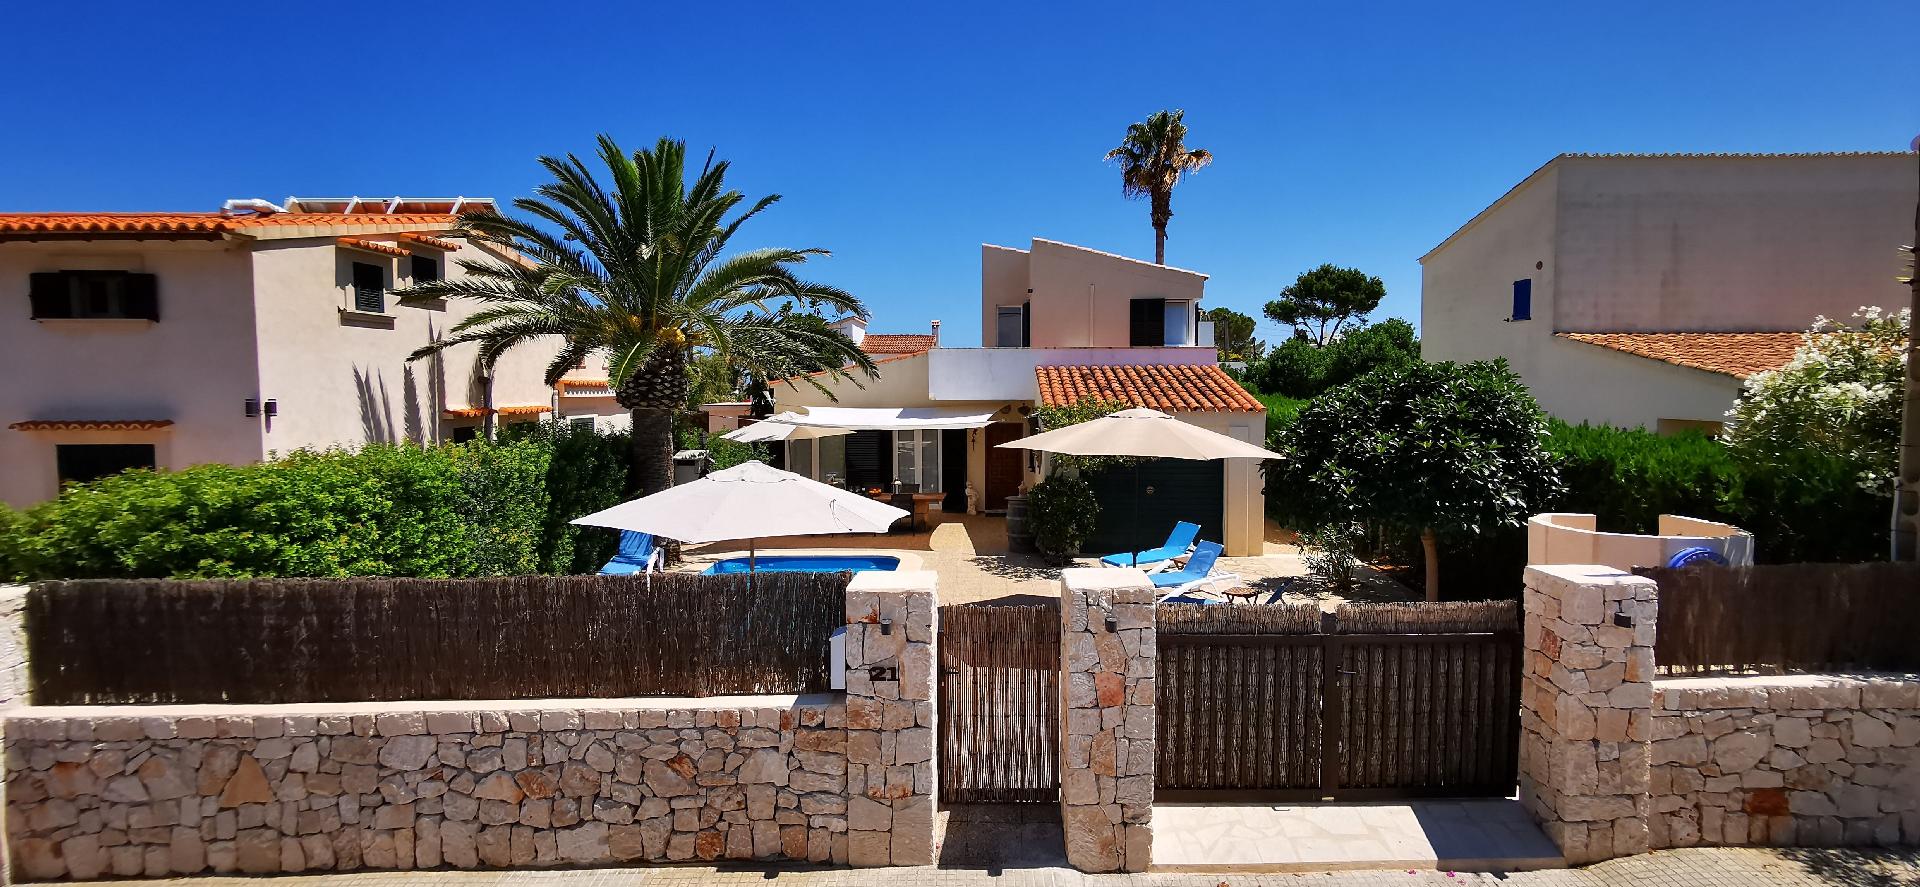 Ferienhaus mit Privatpool für 4 Personen 2 Kinder ca 129 m² in Cala Llombards Mallorca Südostküste von Mallorca